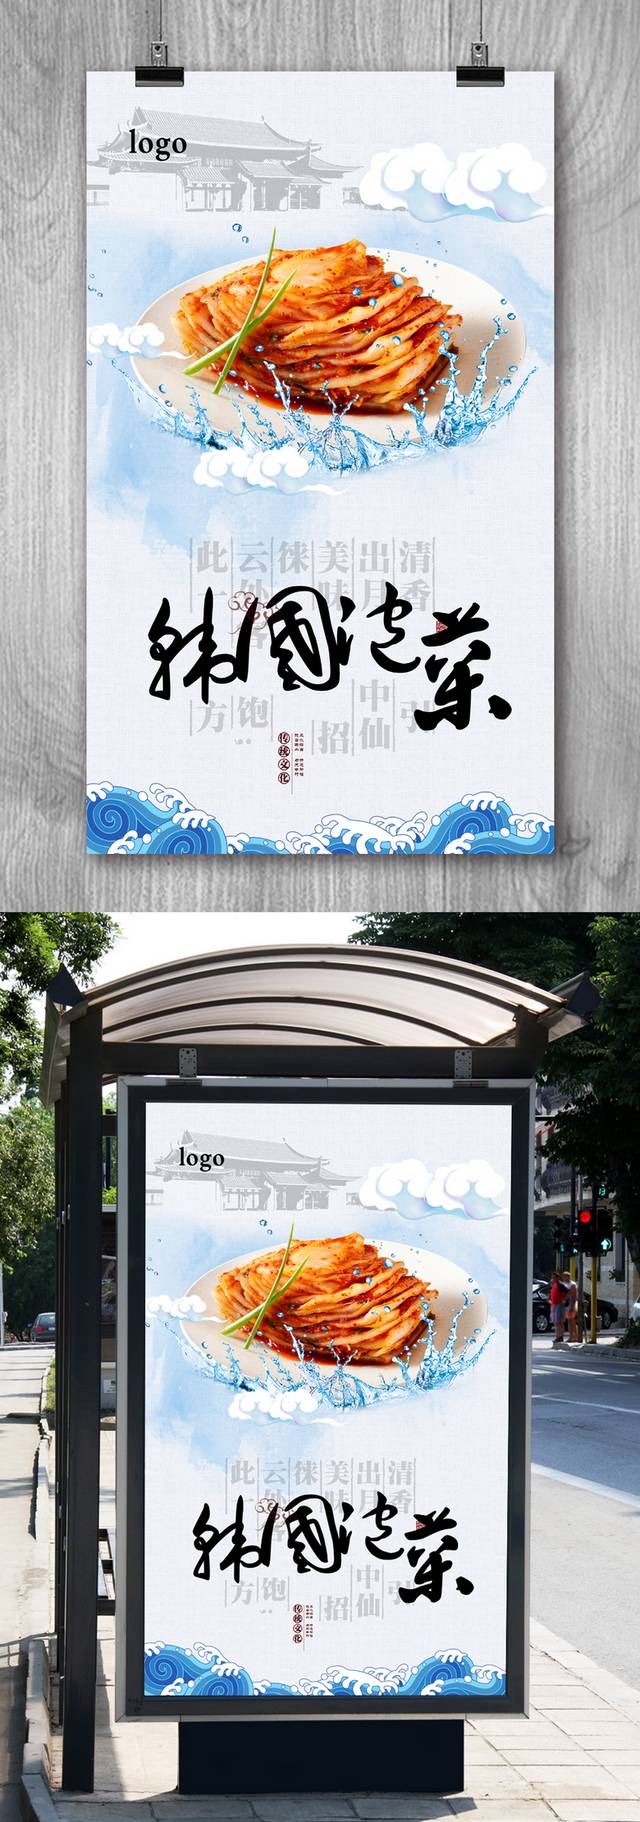 清新韩式泡菜宣传海报设计